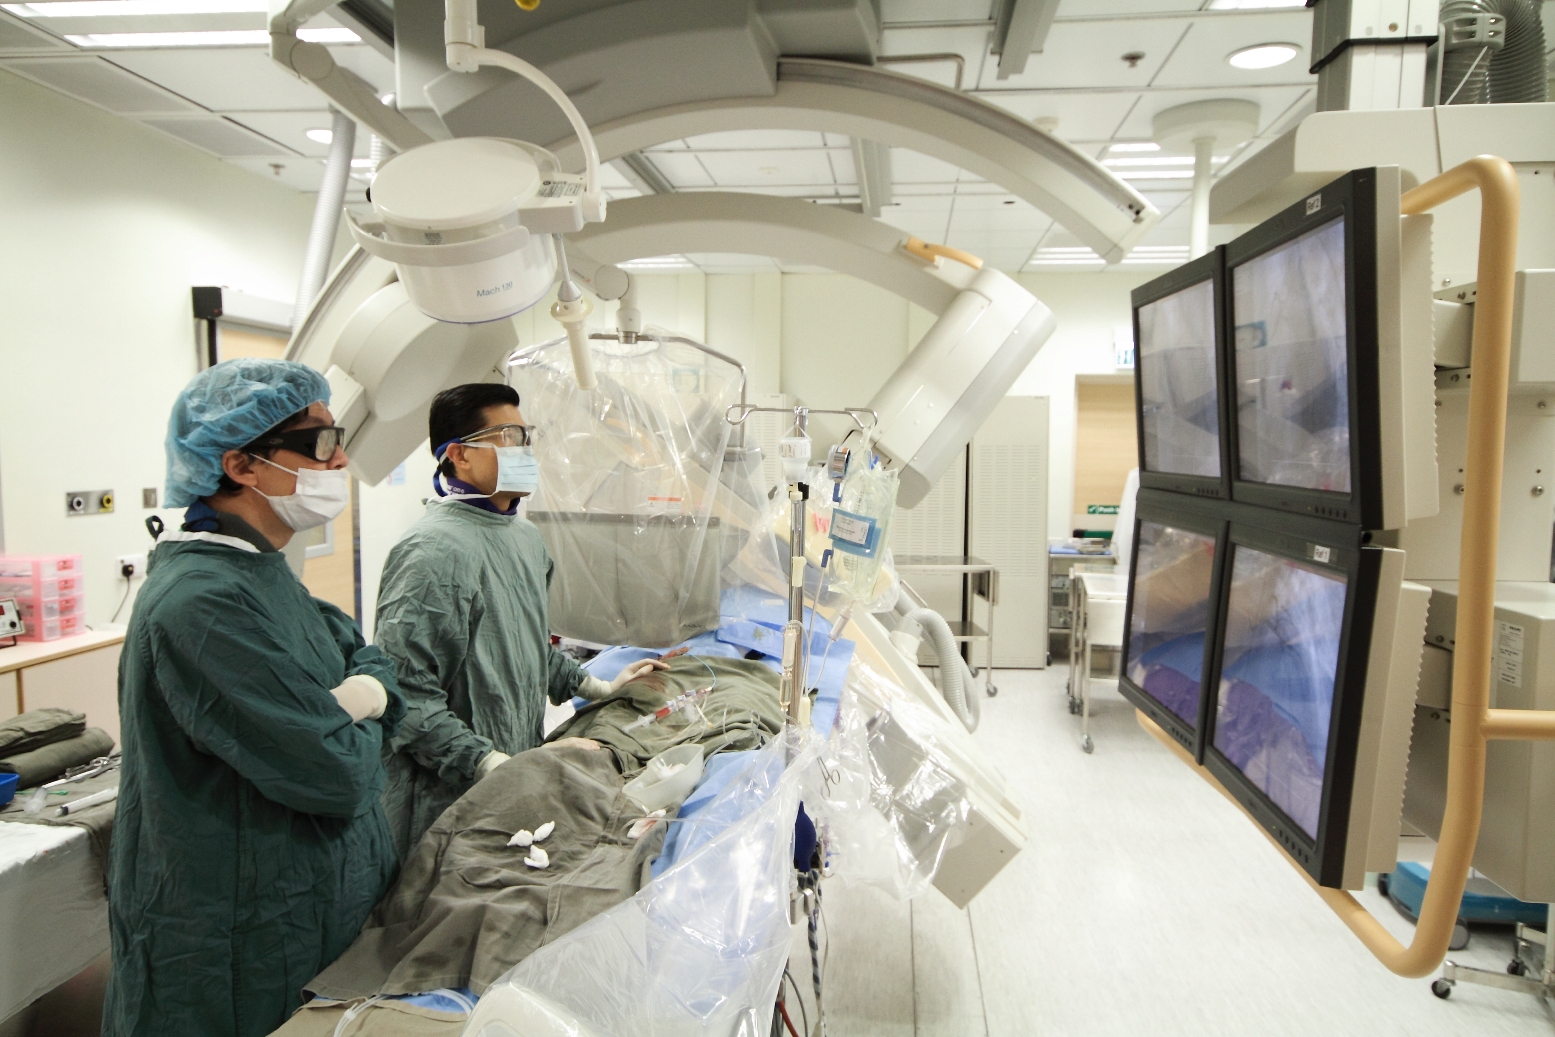 香港中文大学威尔斯亲王医院利国伟心血管治疗中心配备先进的设备和尖端技术，每年进行超过2,500宗微创心血管手术，为本港心血管病患者提供适切的诊断和治疗。